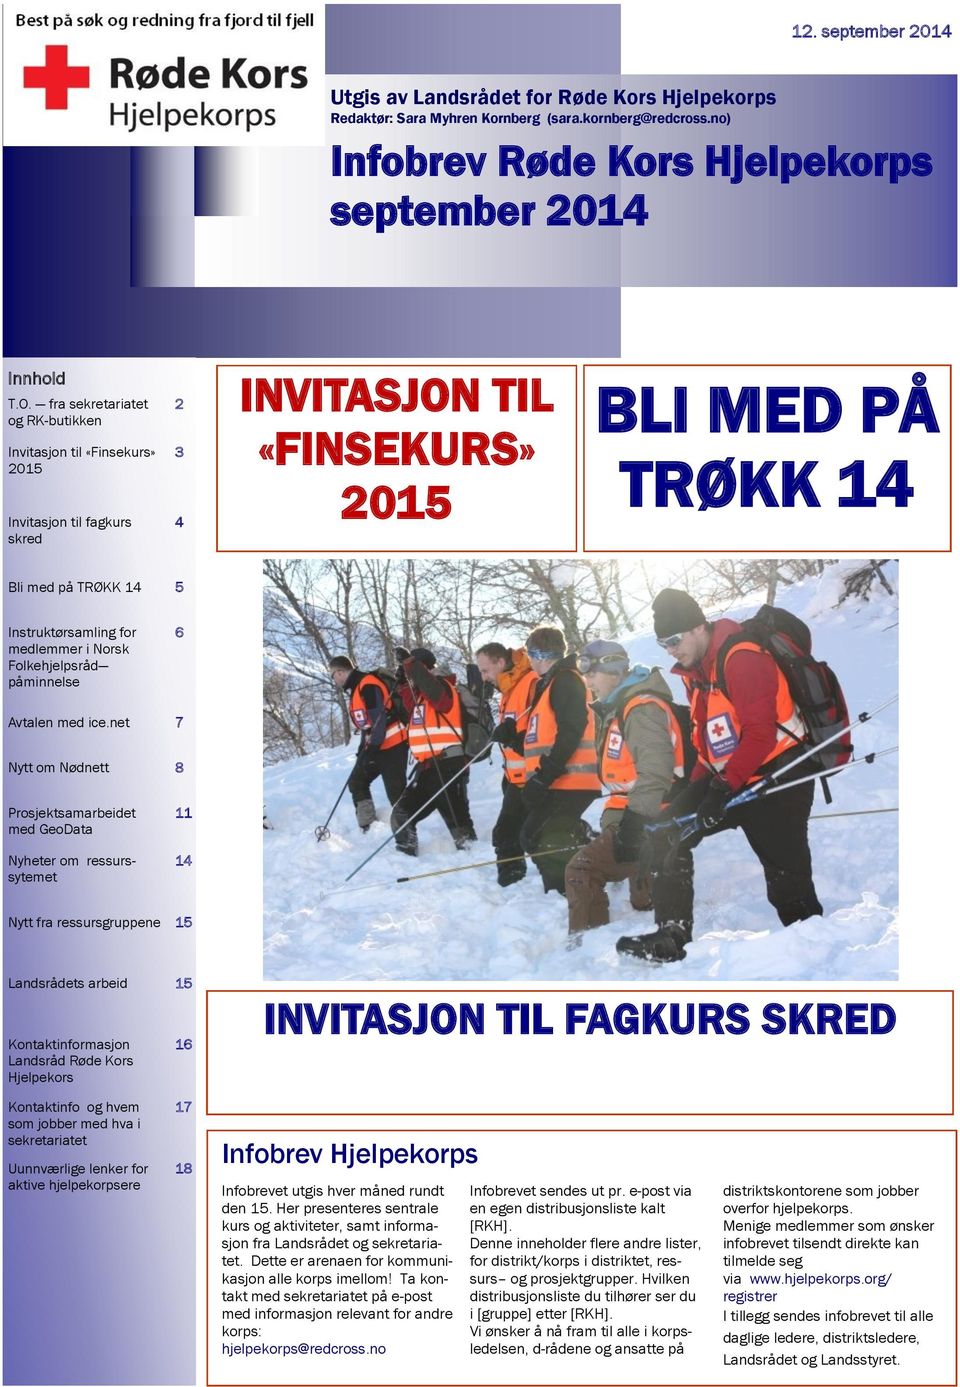 medlemmer i Norsk Folkehjelpsråd påminnelse 6 Avtalen med ice.